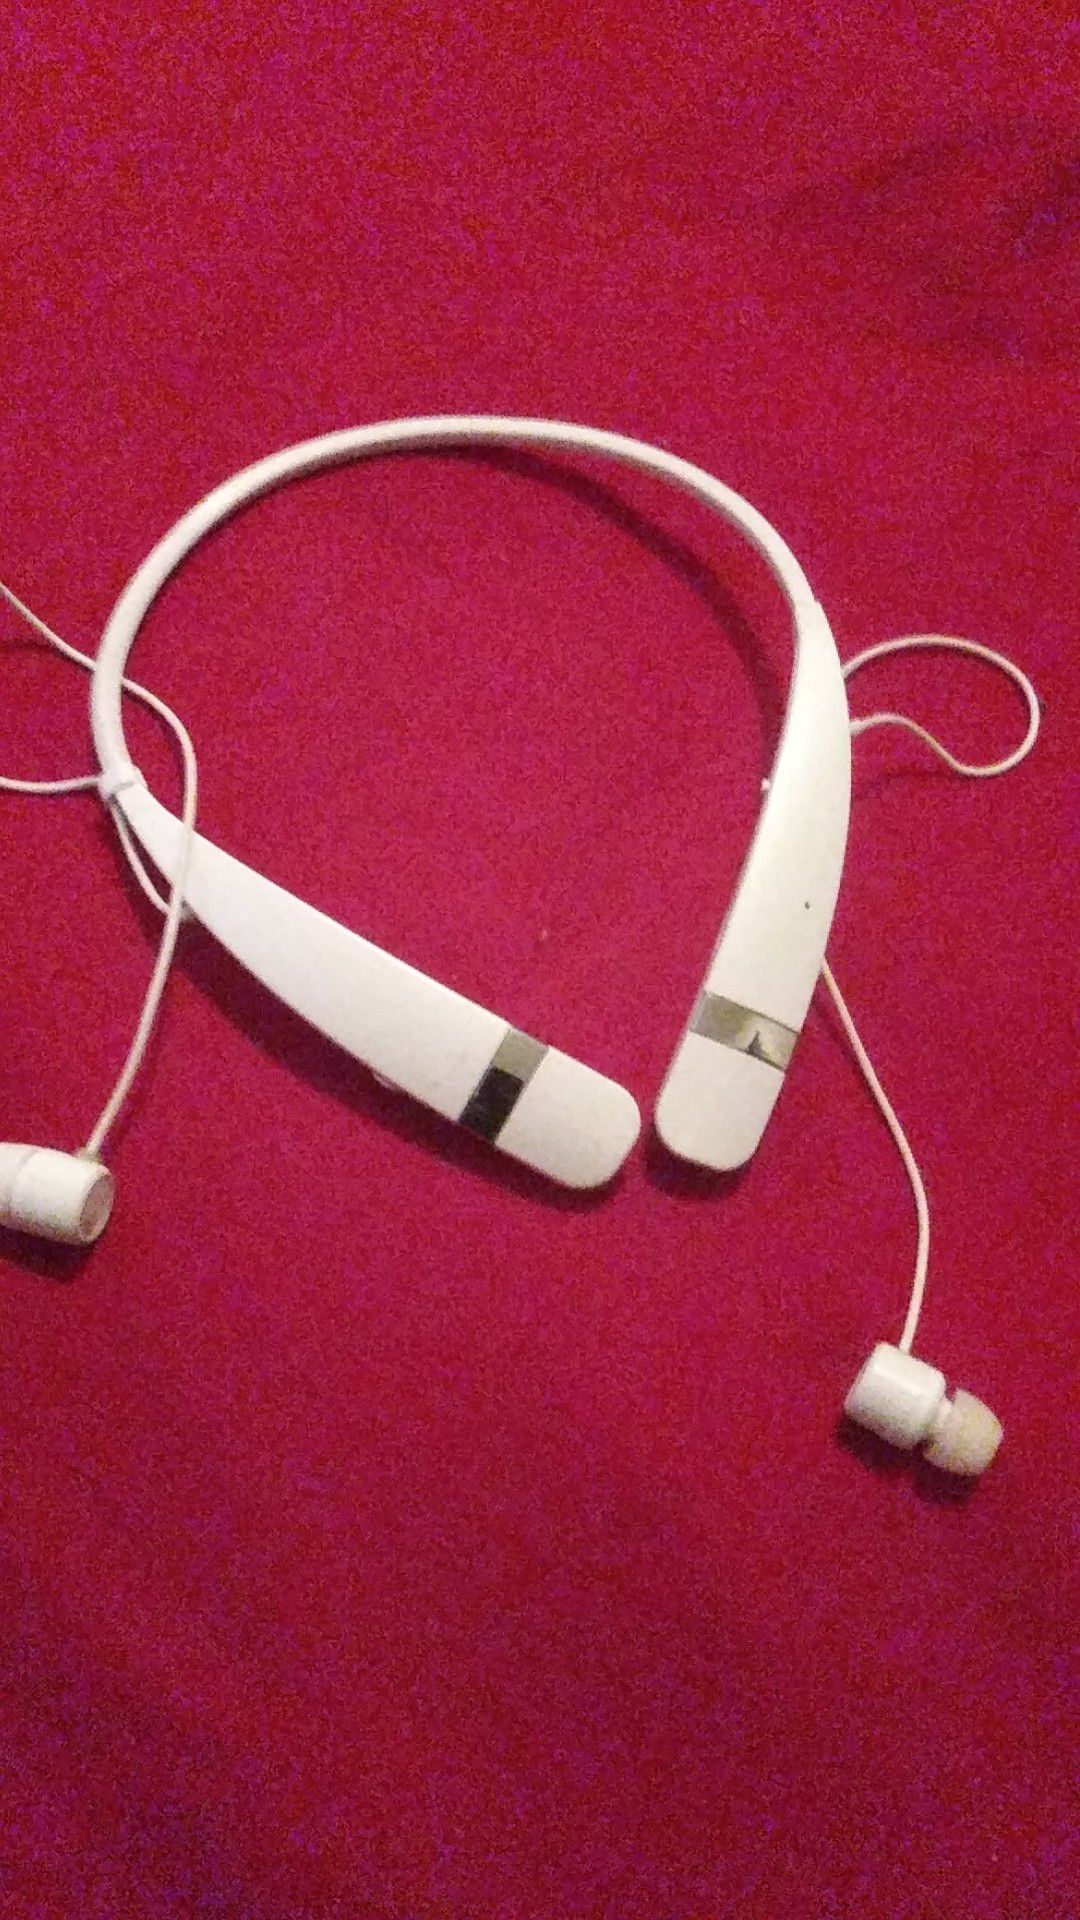 LG Bluetooth Headphones